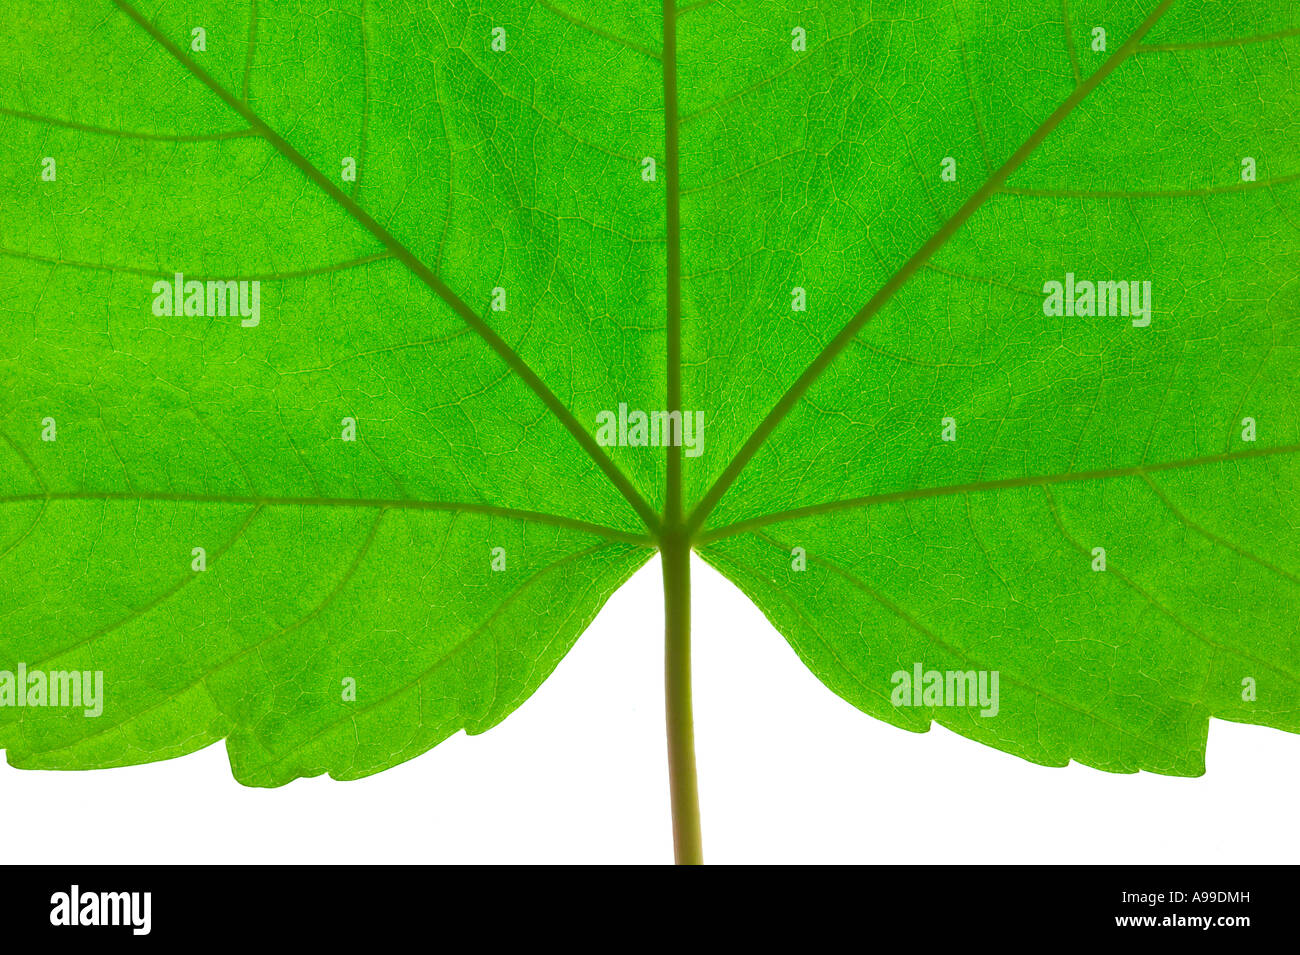 Makroaufnahme von einem grünen Blatt mit Stiel Stockfoto